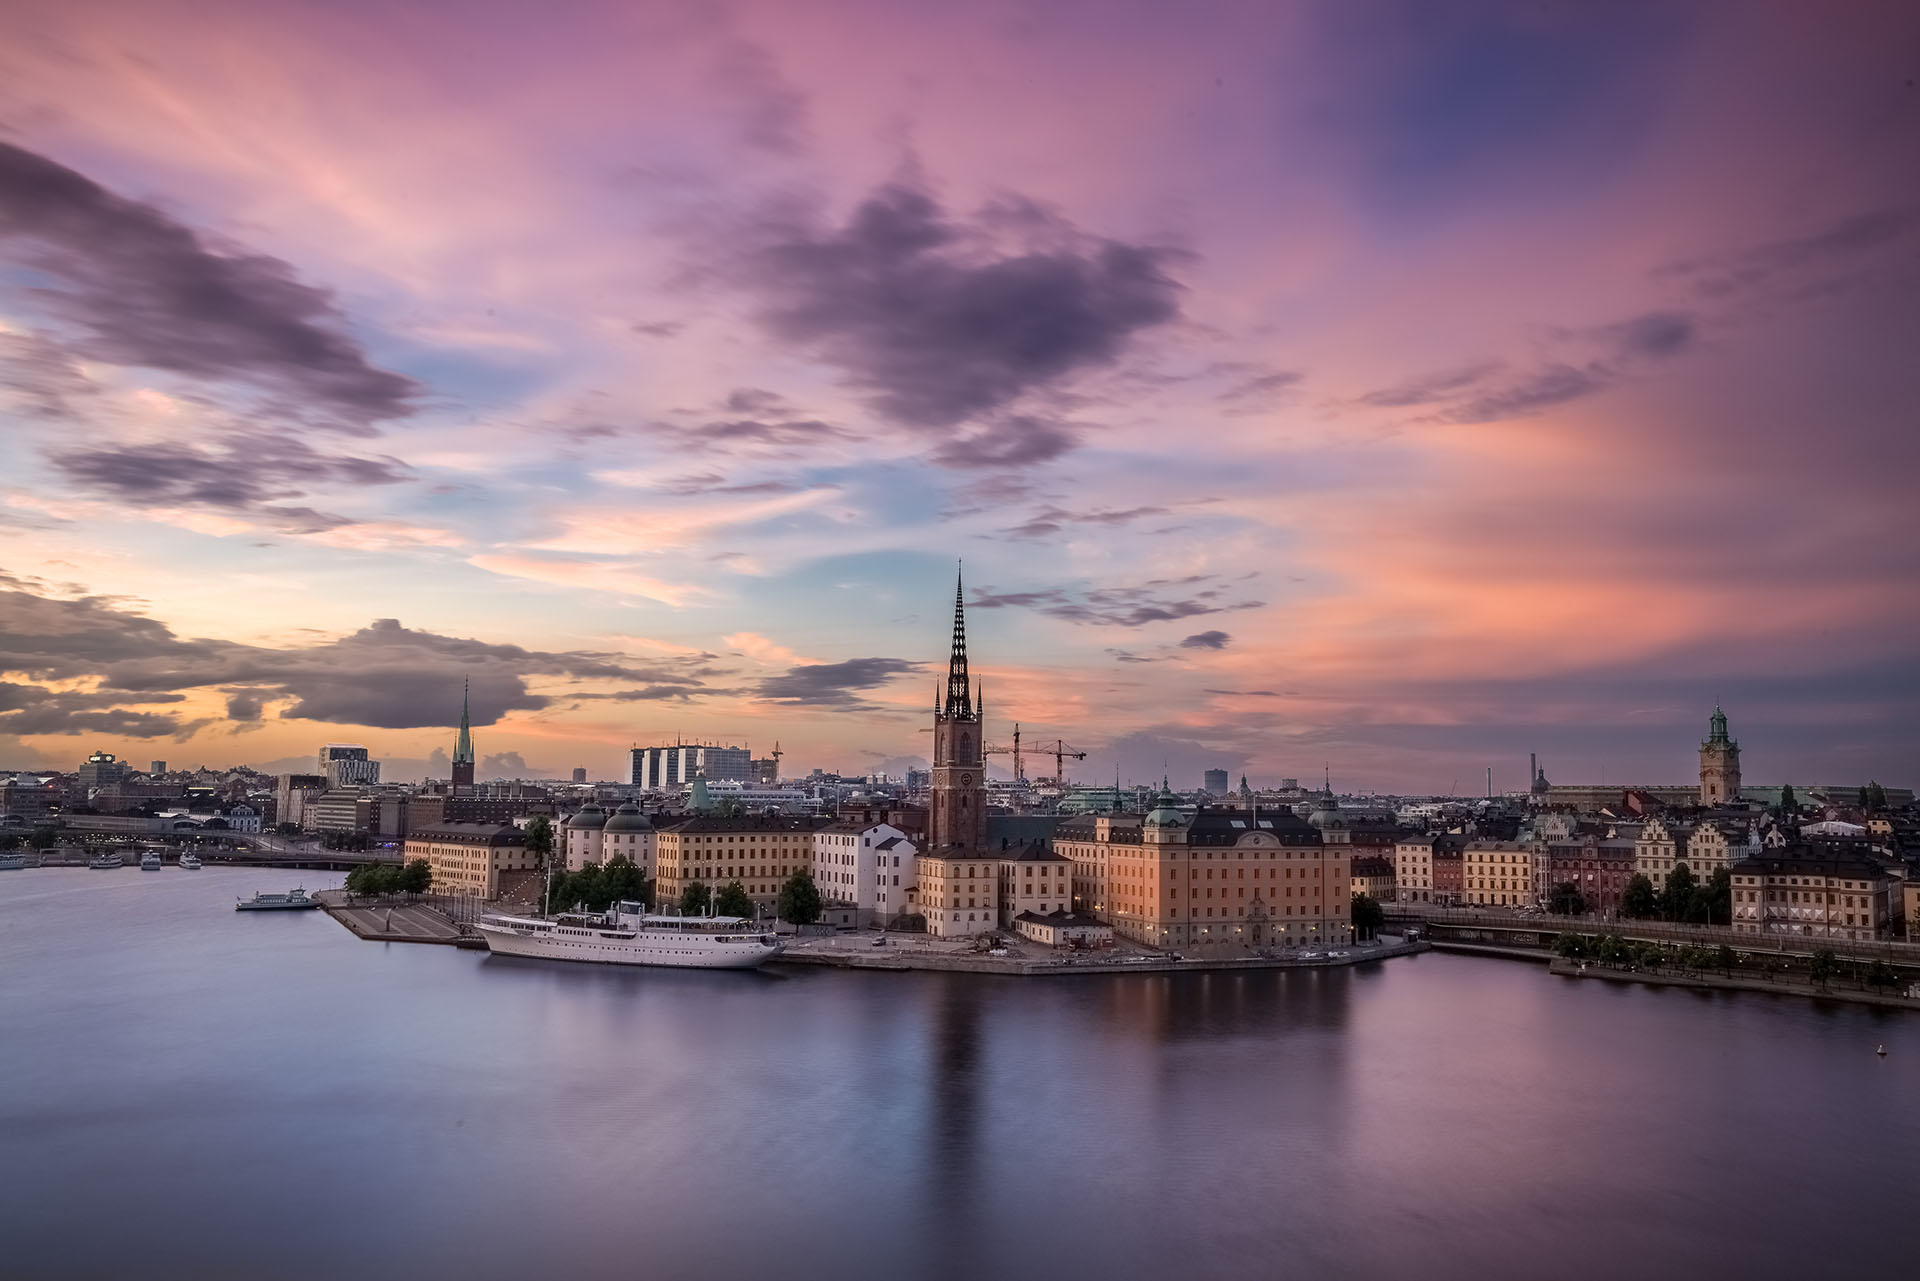 Sunset in Stockholm, Sweden